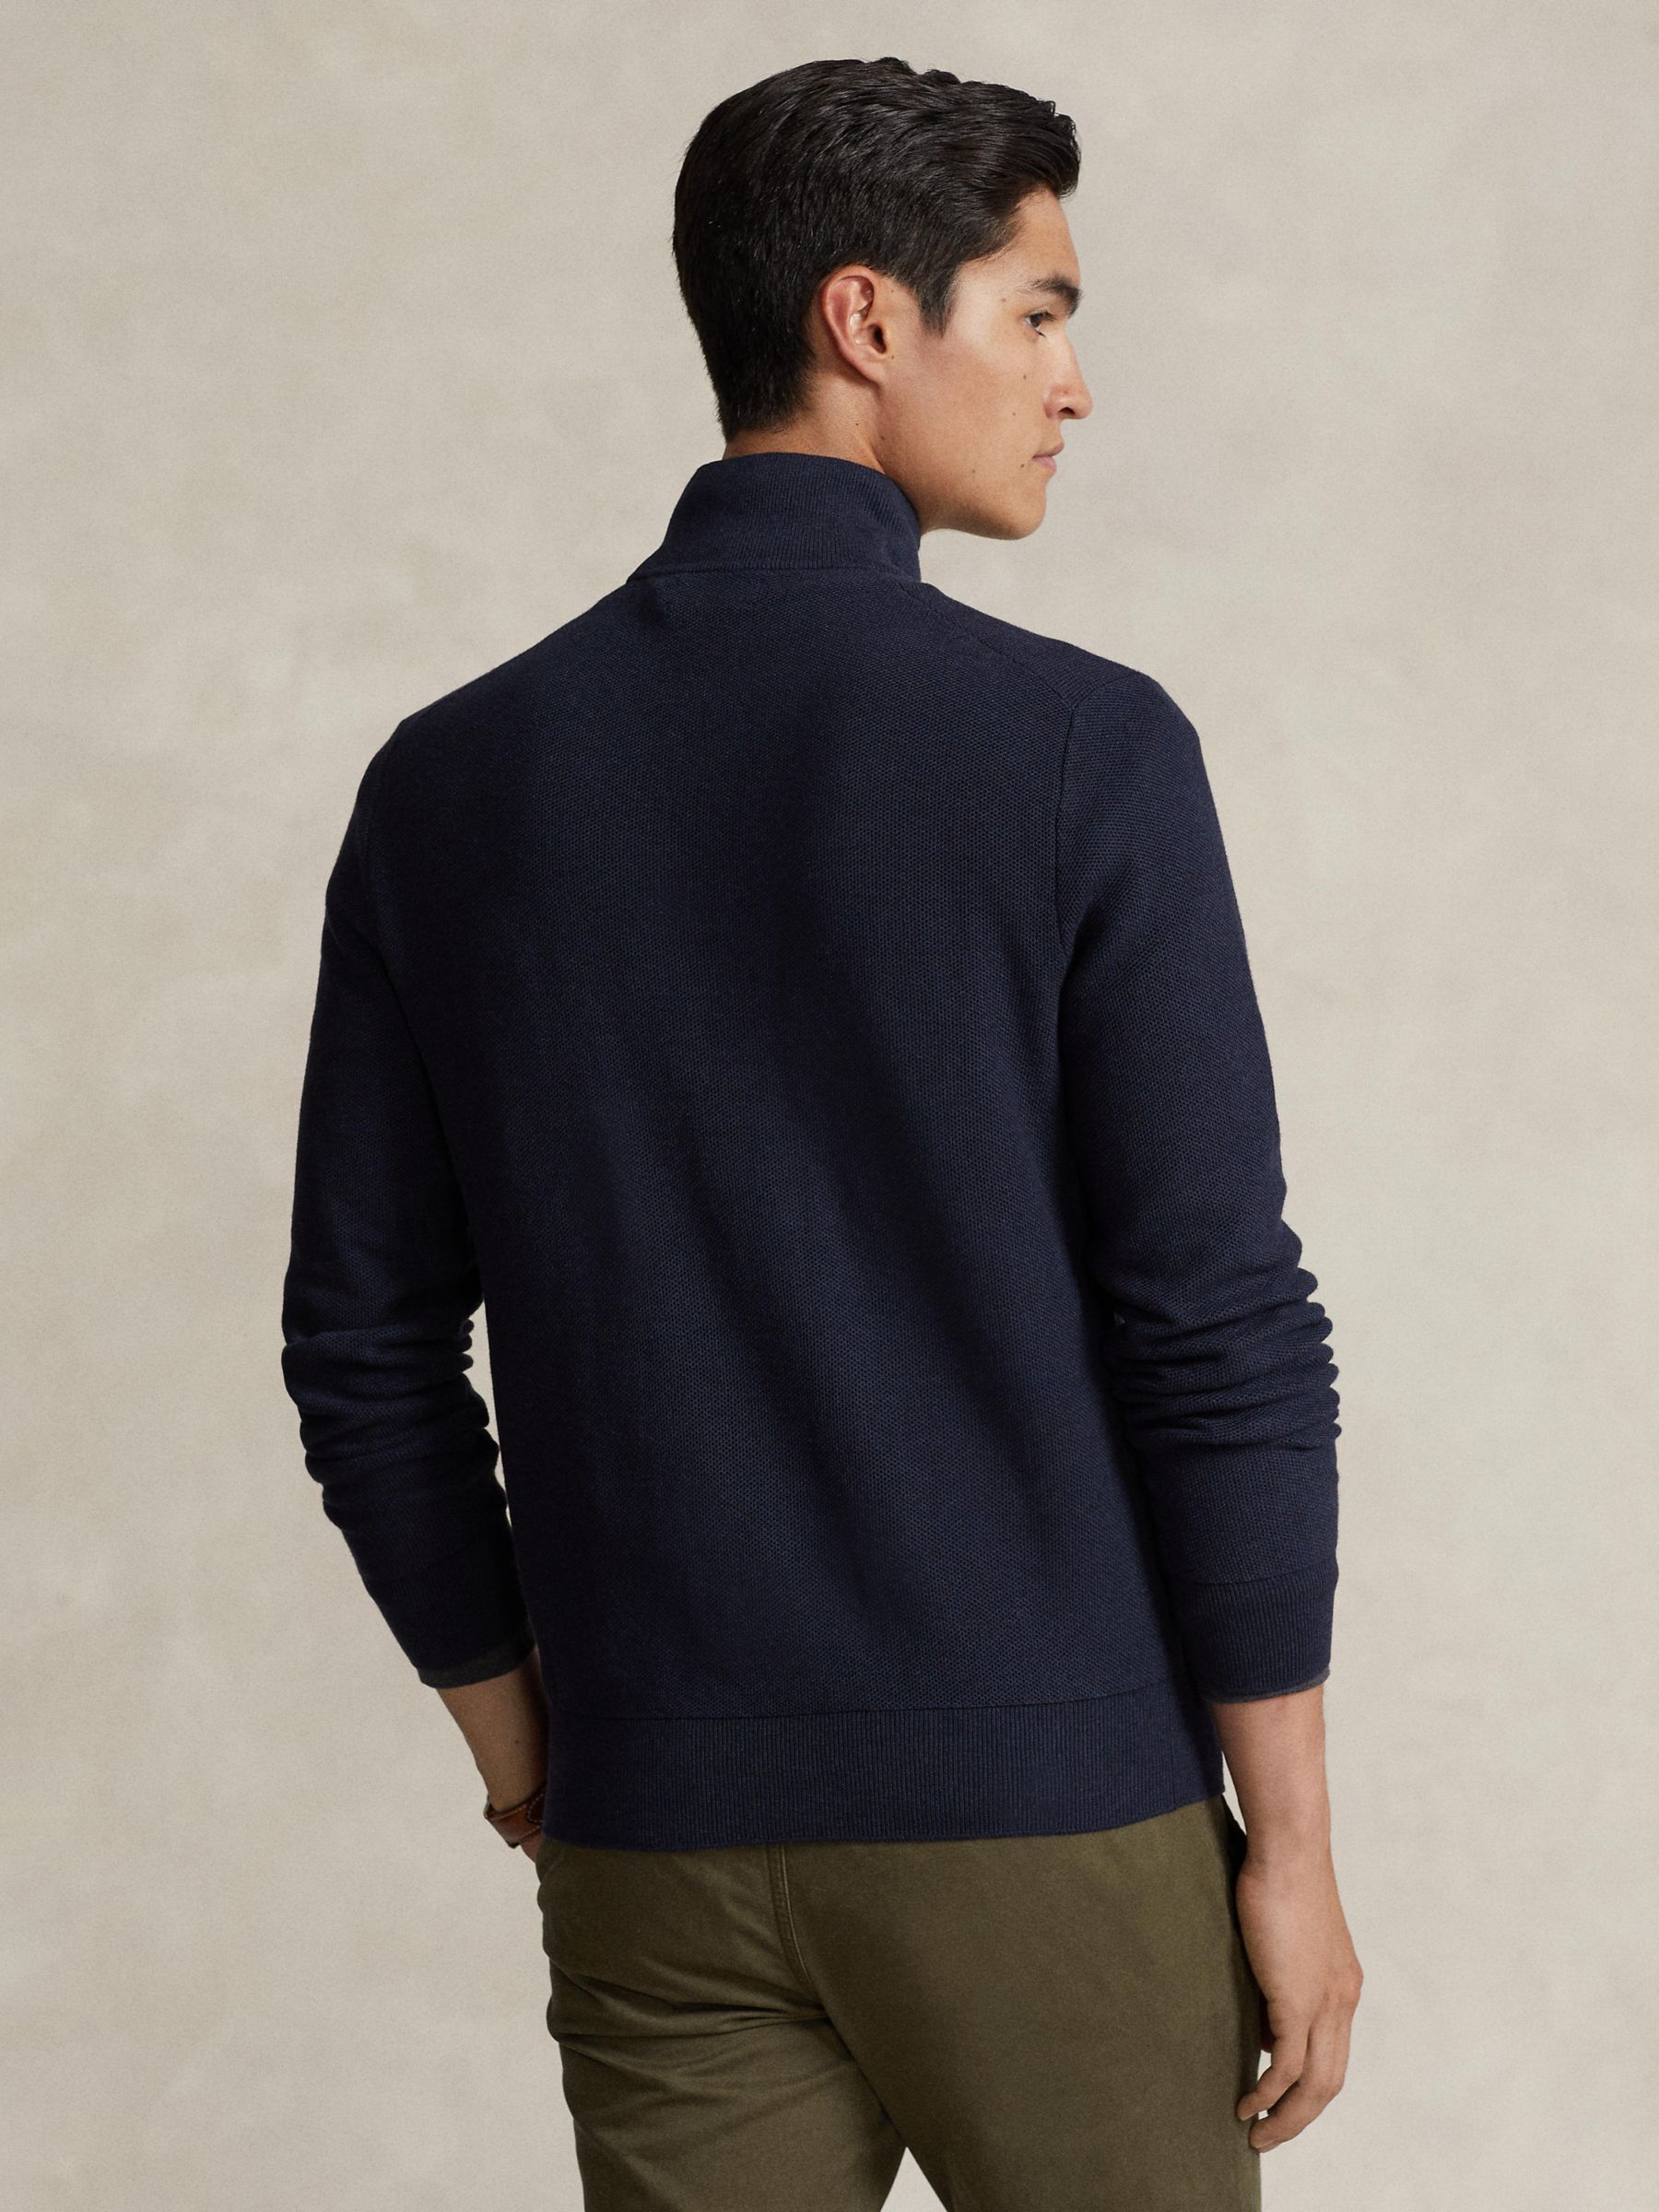 Buy Polo Ralph Lauren Long Sleeve Half Zip Pullover Jumper Online at johnlewis.com